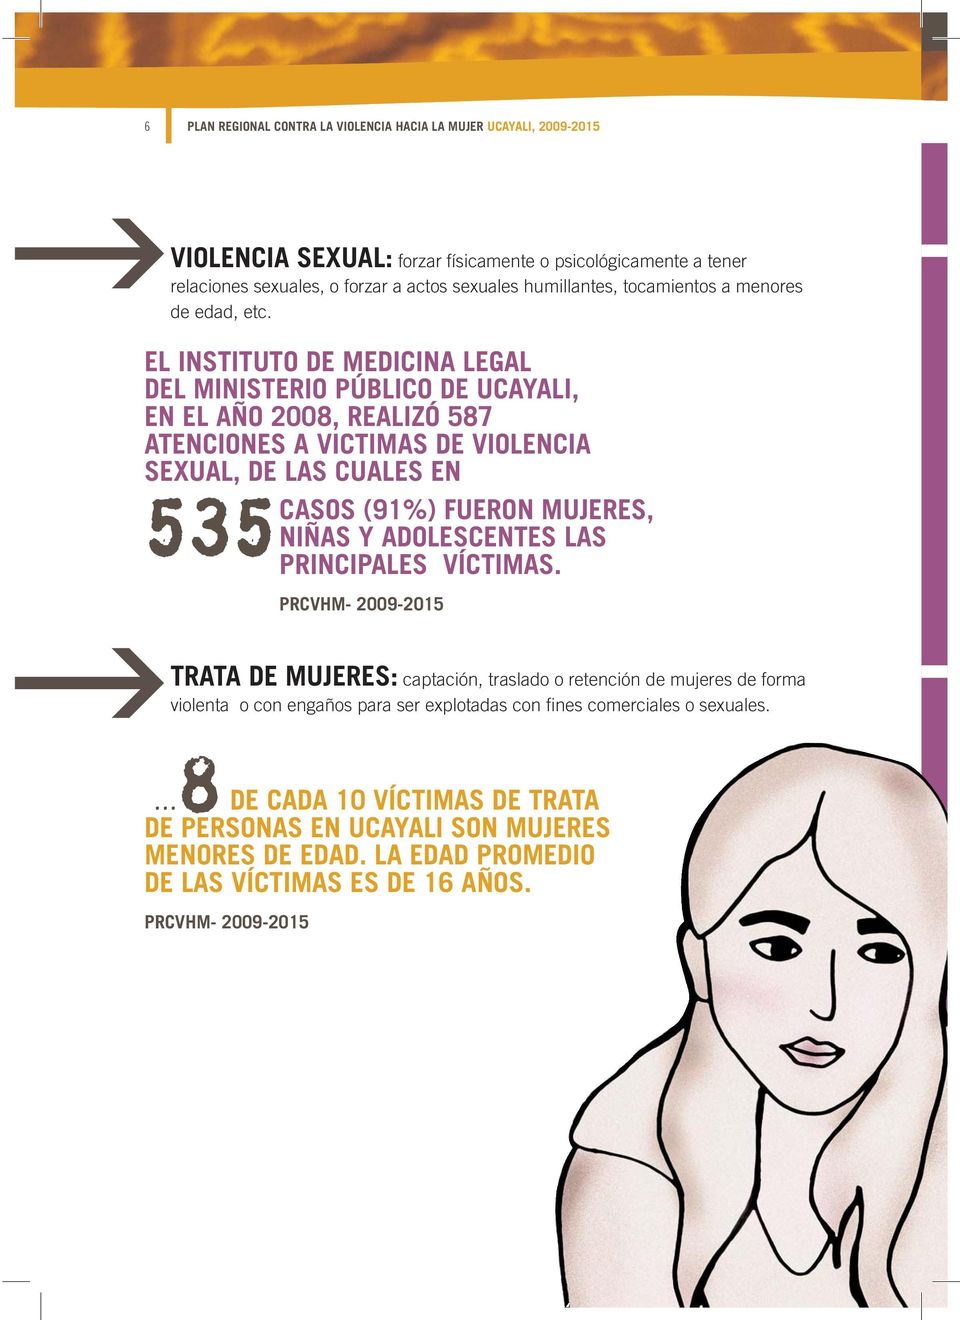 EL INSTITUTO DE MEDICINA LEGAL DEL MINISTERIO PÚBLICO DE UCAYALI, EN EL AÑO 2008, REALIZÓ 587 ATENCIONES A VICTIMAS DE VIOLENCIA SEXUAL, DE LAS CUALES EN 535 CASOS (91%) FUERON MUJERES, NIÑAS Y